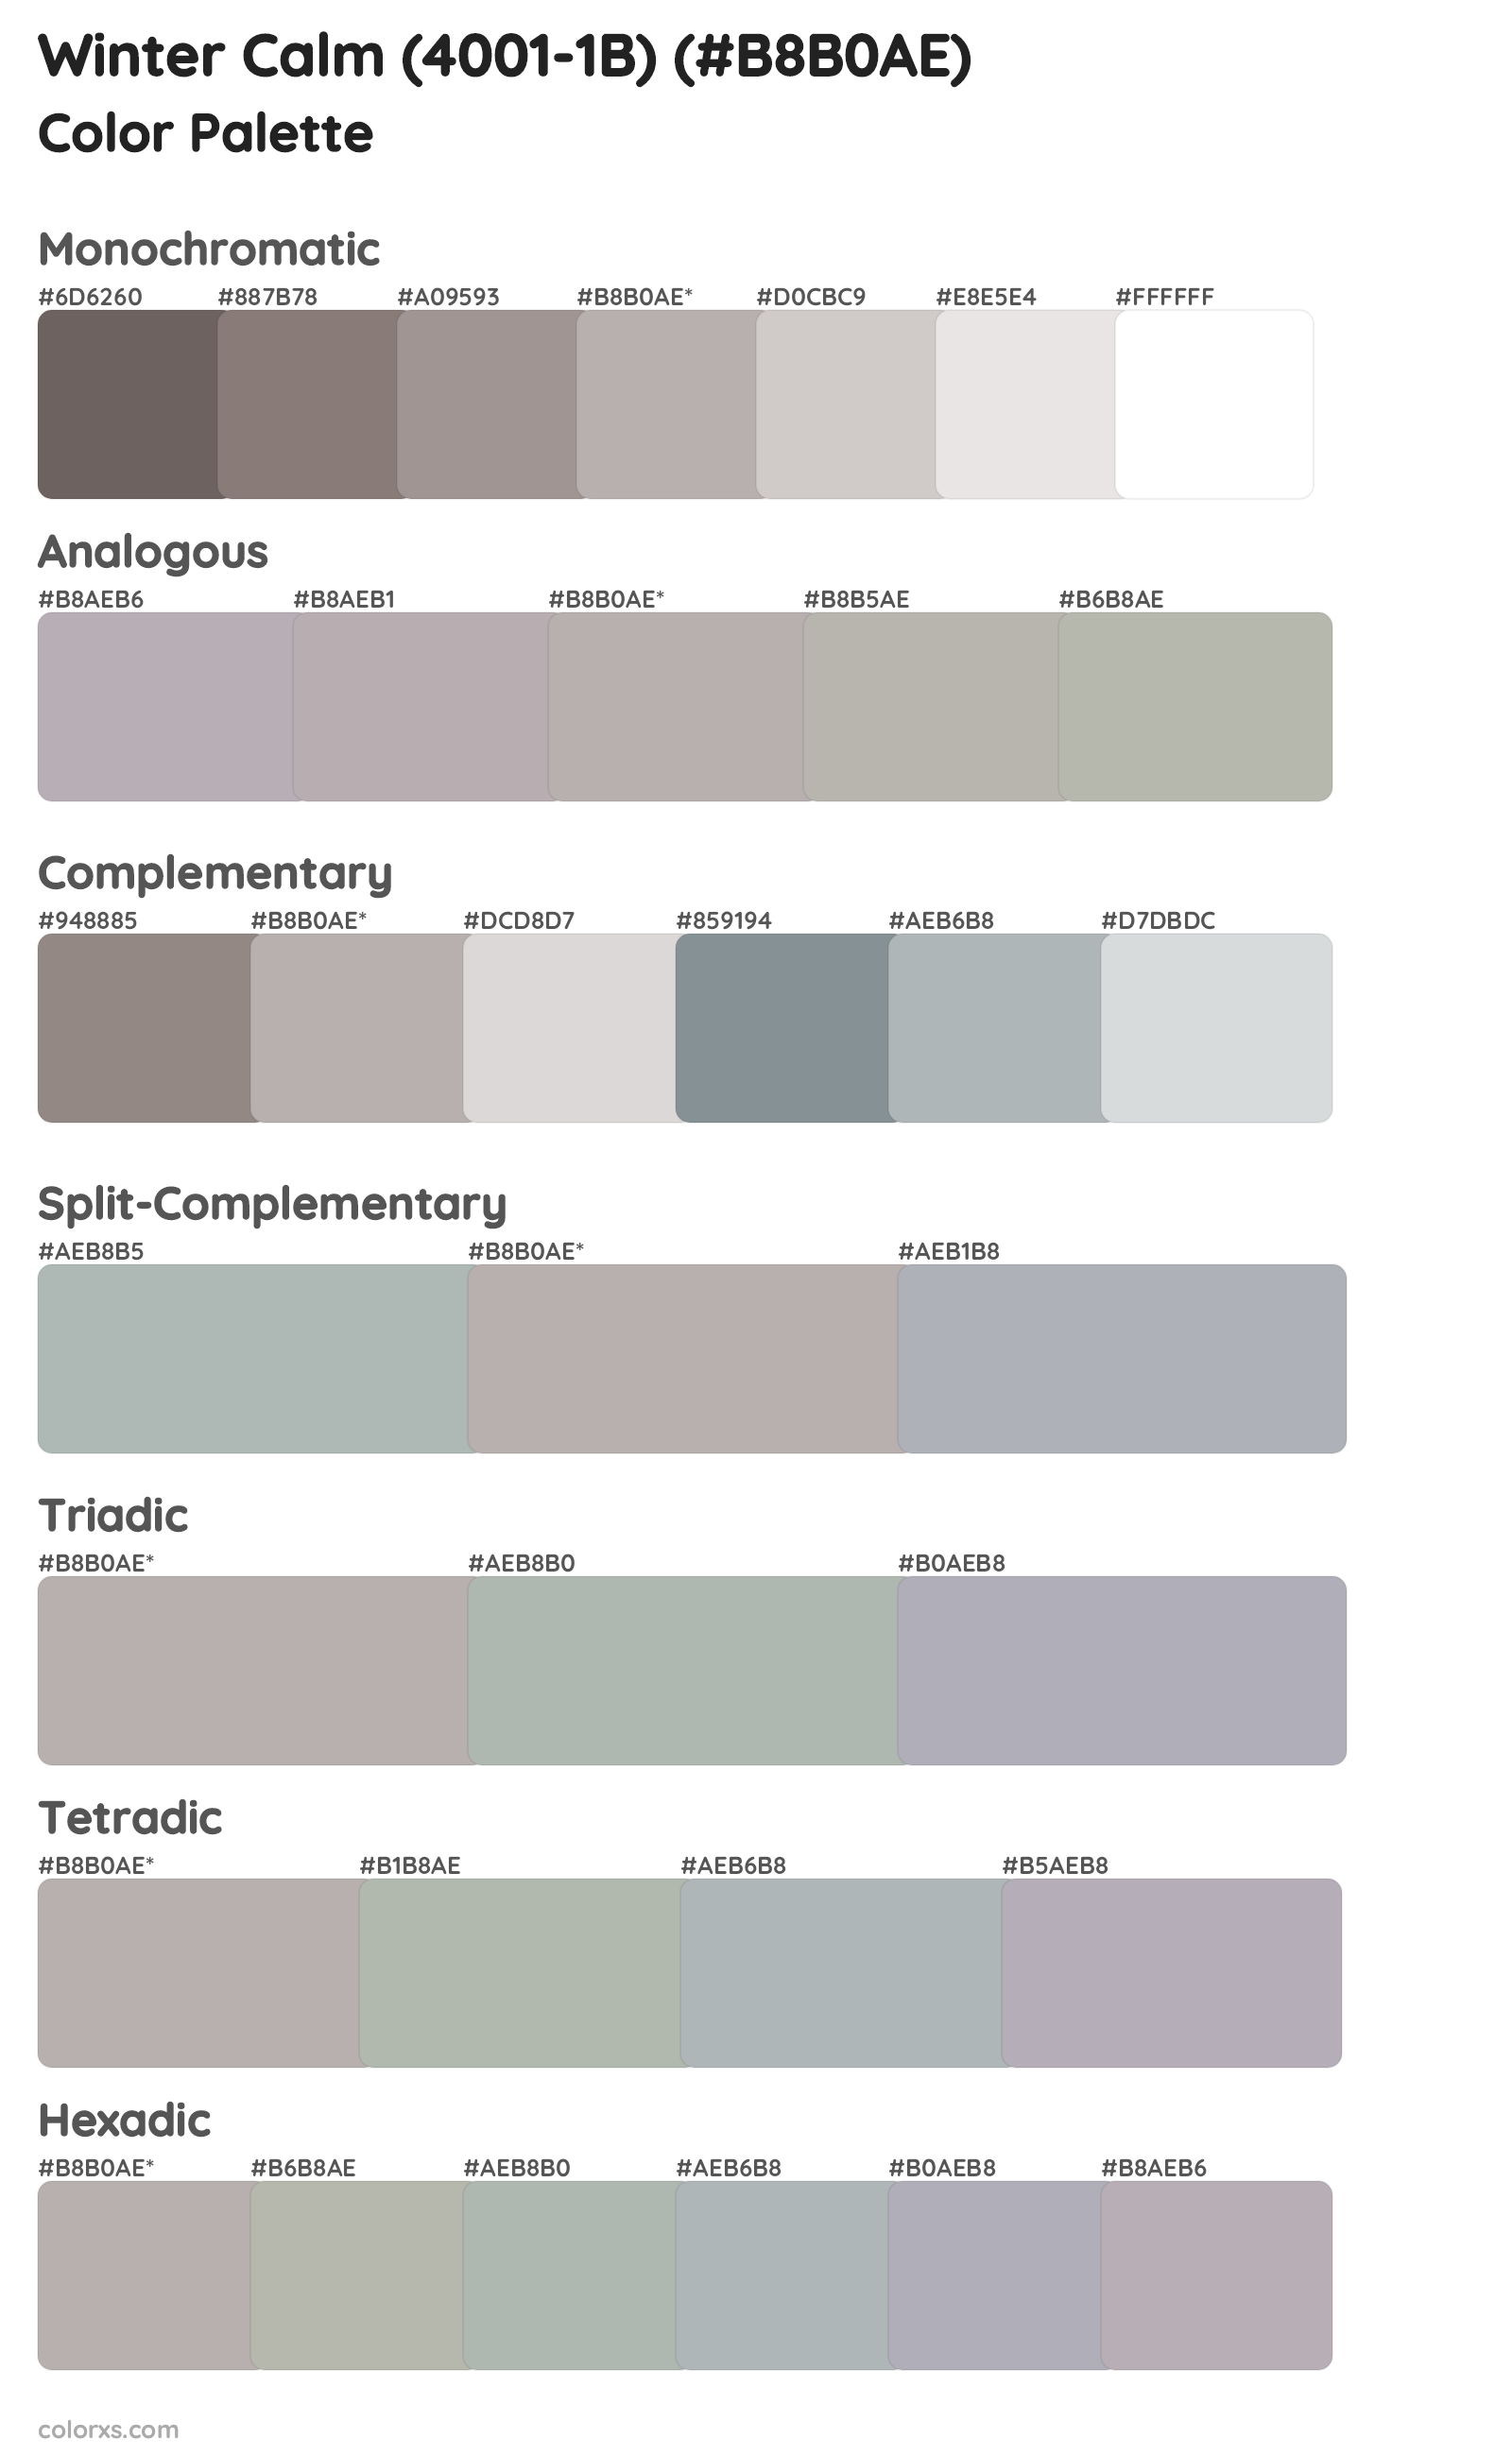 Winter Calm (4001-1B) Color Scheme Palettes